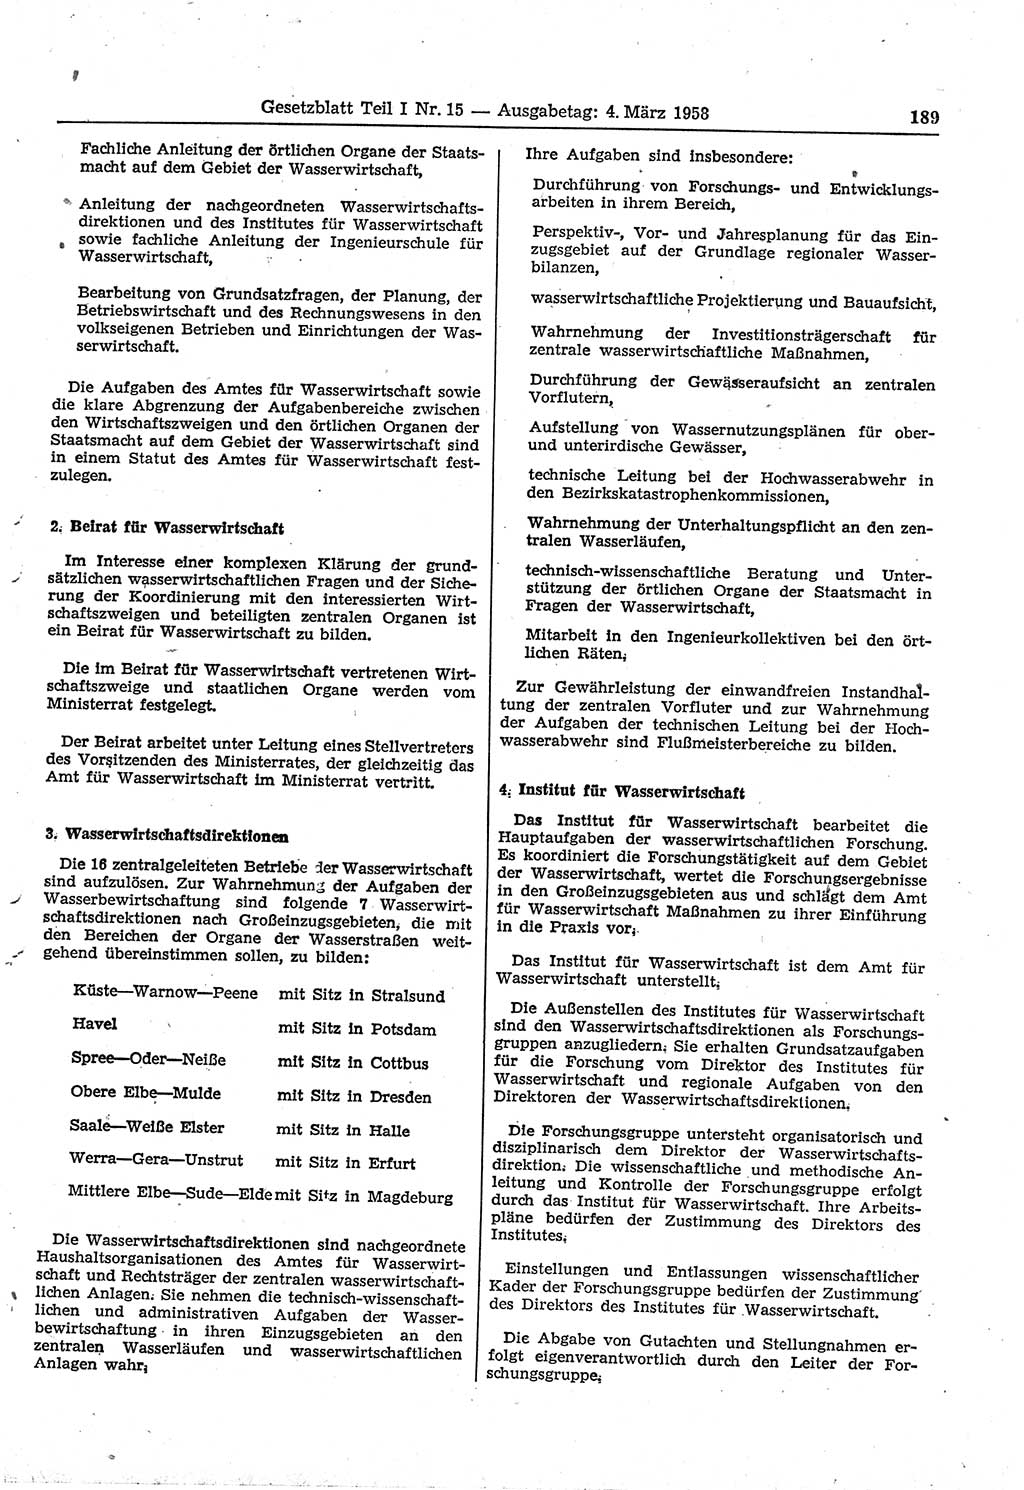 Gesetzblatt (GBl.) der Deutschen Demokratischen Republik (DDR) Teil Ⅰ 1958, Seite 189 (GBl. DDR Ⅰ 1958, S. 189)